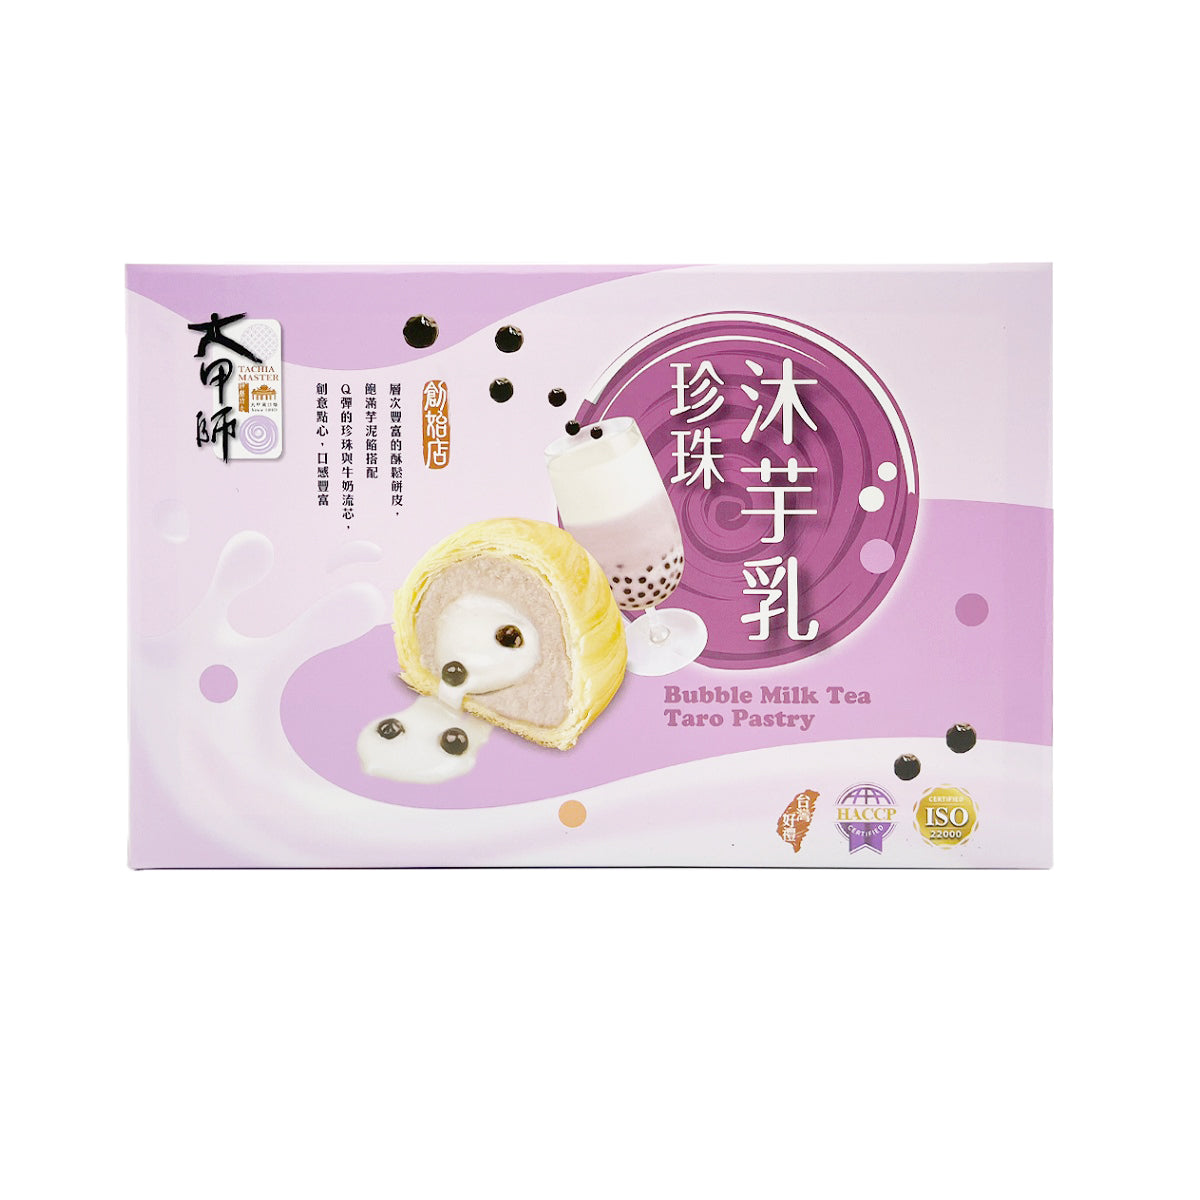 【TACHIA MASTER】 Bubble Milk Tea Taro Pastry 400g 8pcs